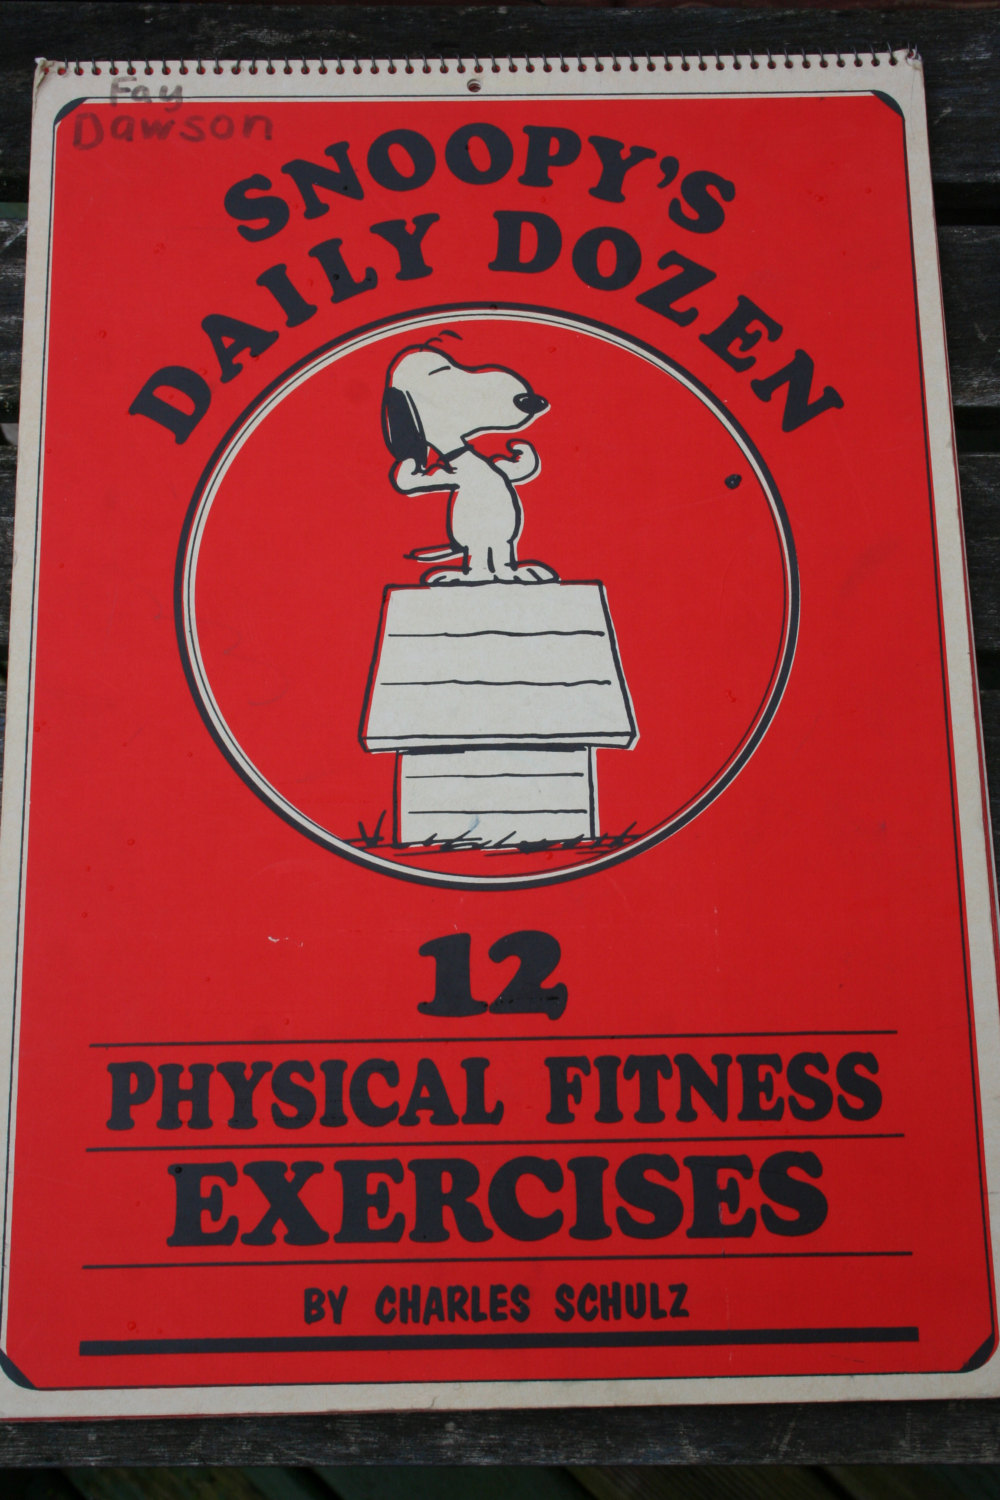 daily dozen exercises